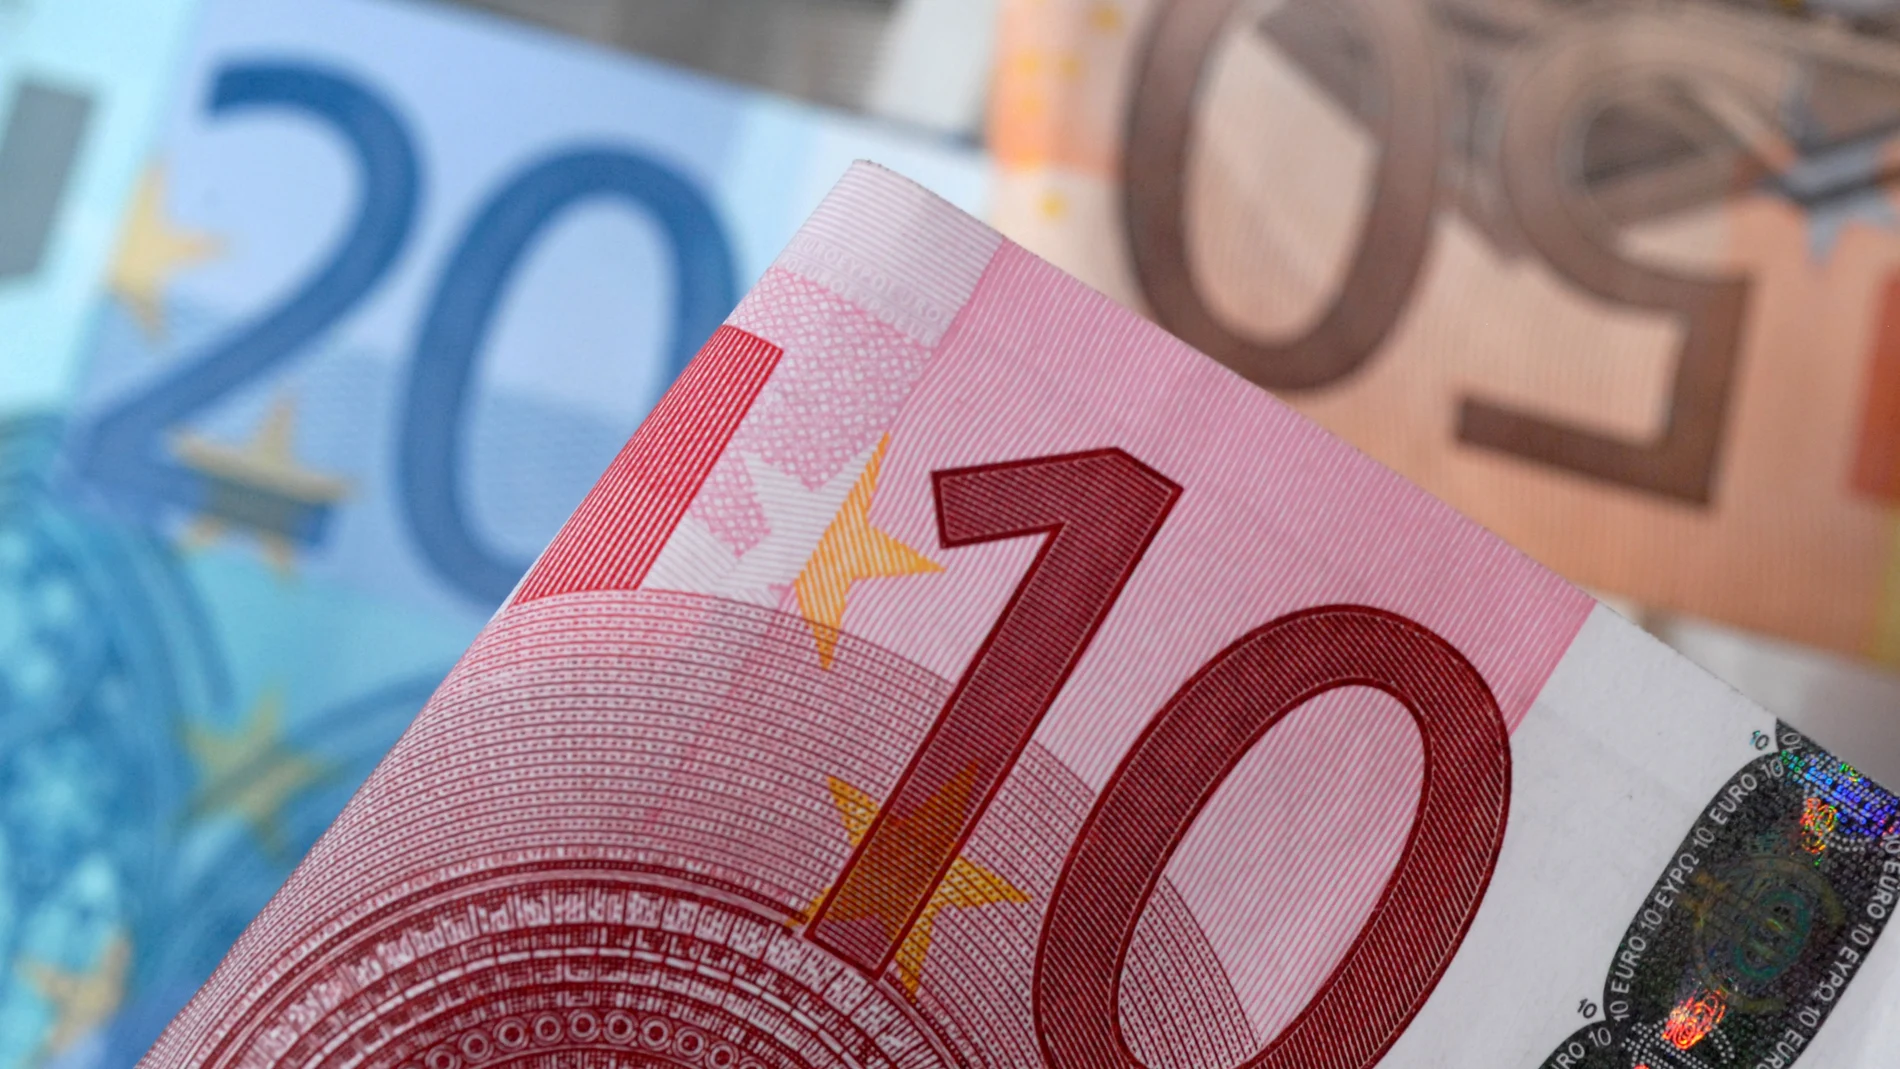 8.000 euros: cómo participar en la búsqueda de un tesoro con todo este dinero